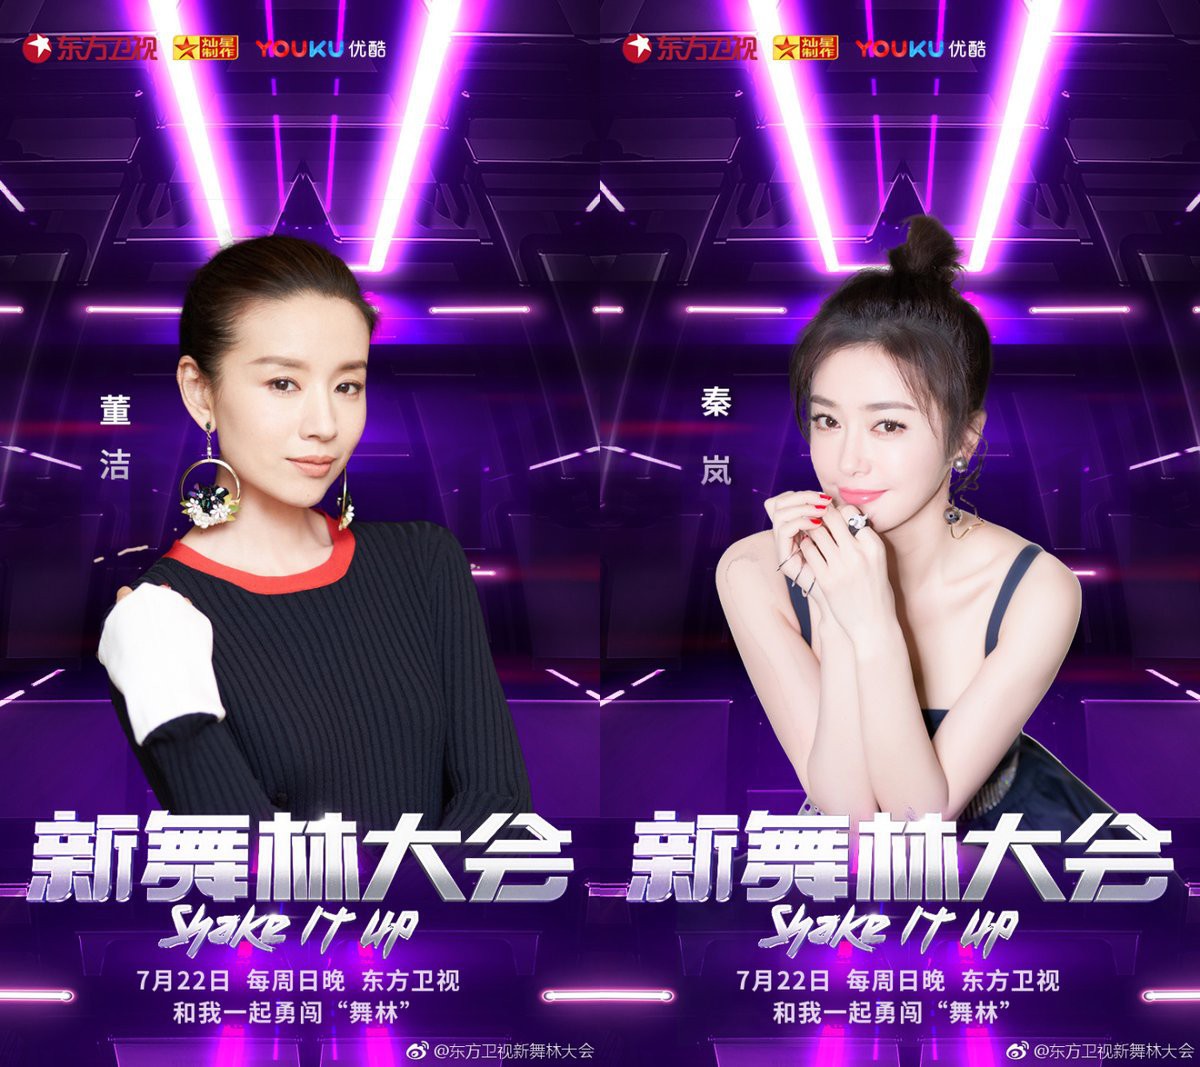 Tần Lam & Đổng Khiết - 2 Phú Sát hoàng hậu cùng tranh tài trong show vũ đạo mới - Ảnh 2.